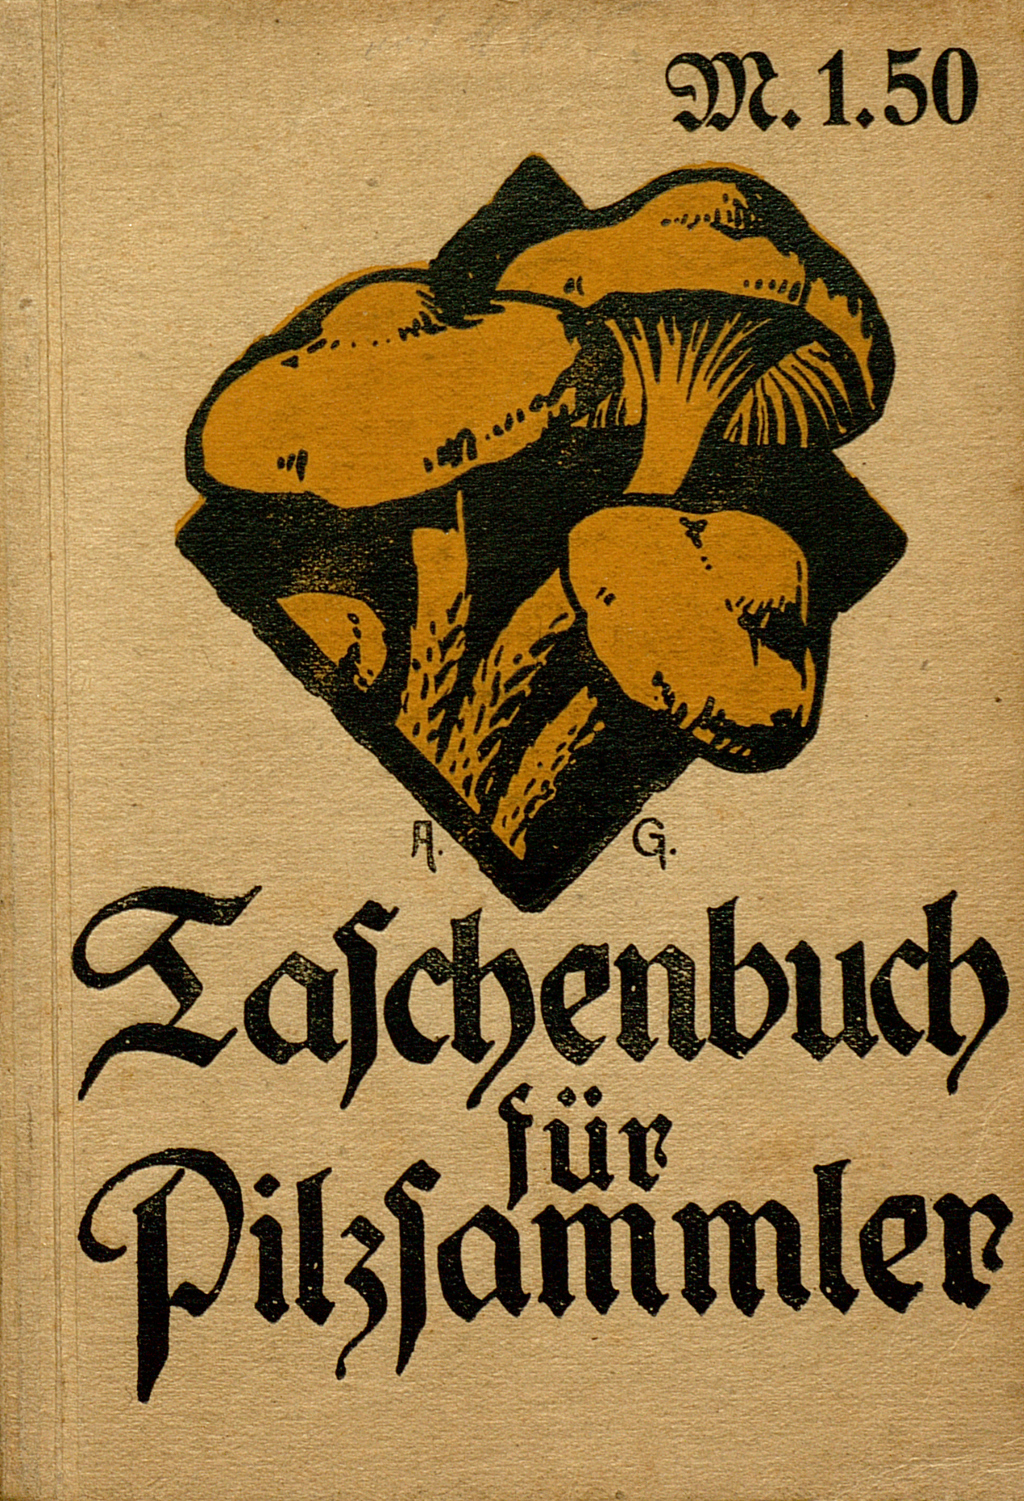 Buchdeckel von "Taschenbuch für Pilzsammler", die Schrift ist gebrochen und die Pilze wachsen aus einer schwarzen Raute.